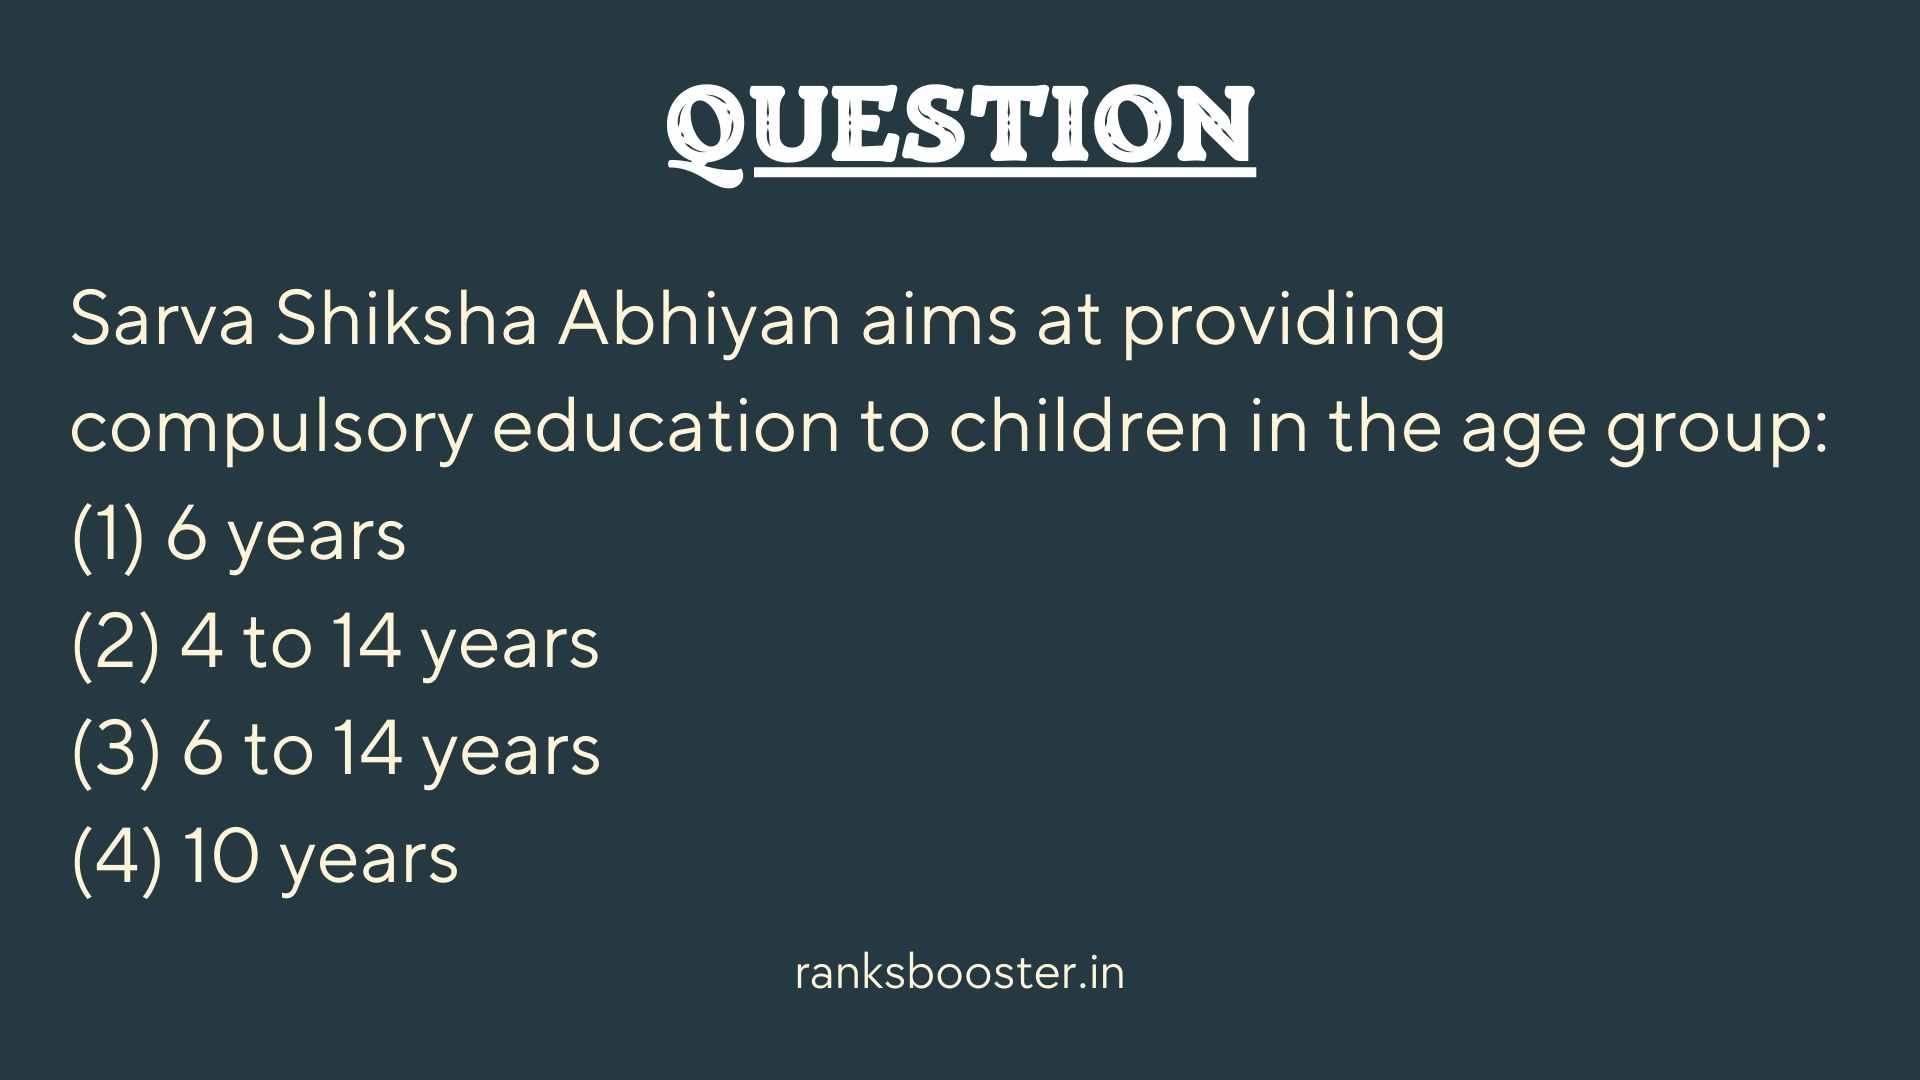 Sarva Shiksha Abhiyan aims at providing compulsory education to children in the age group